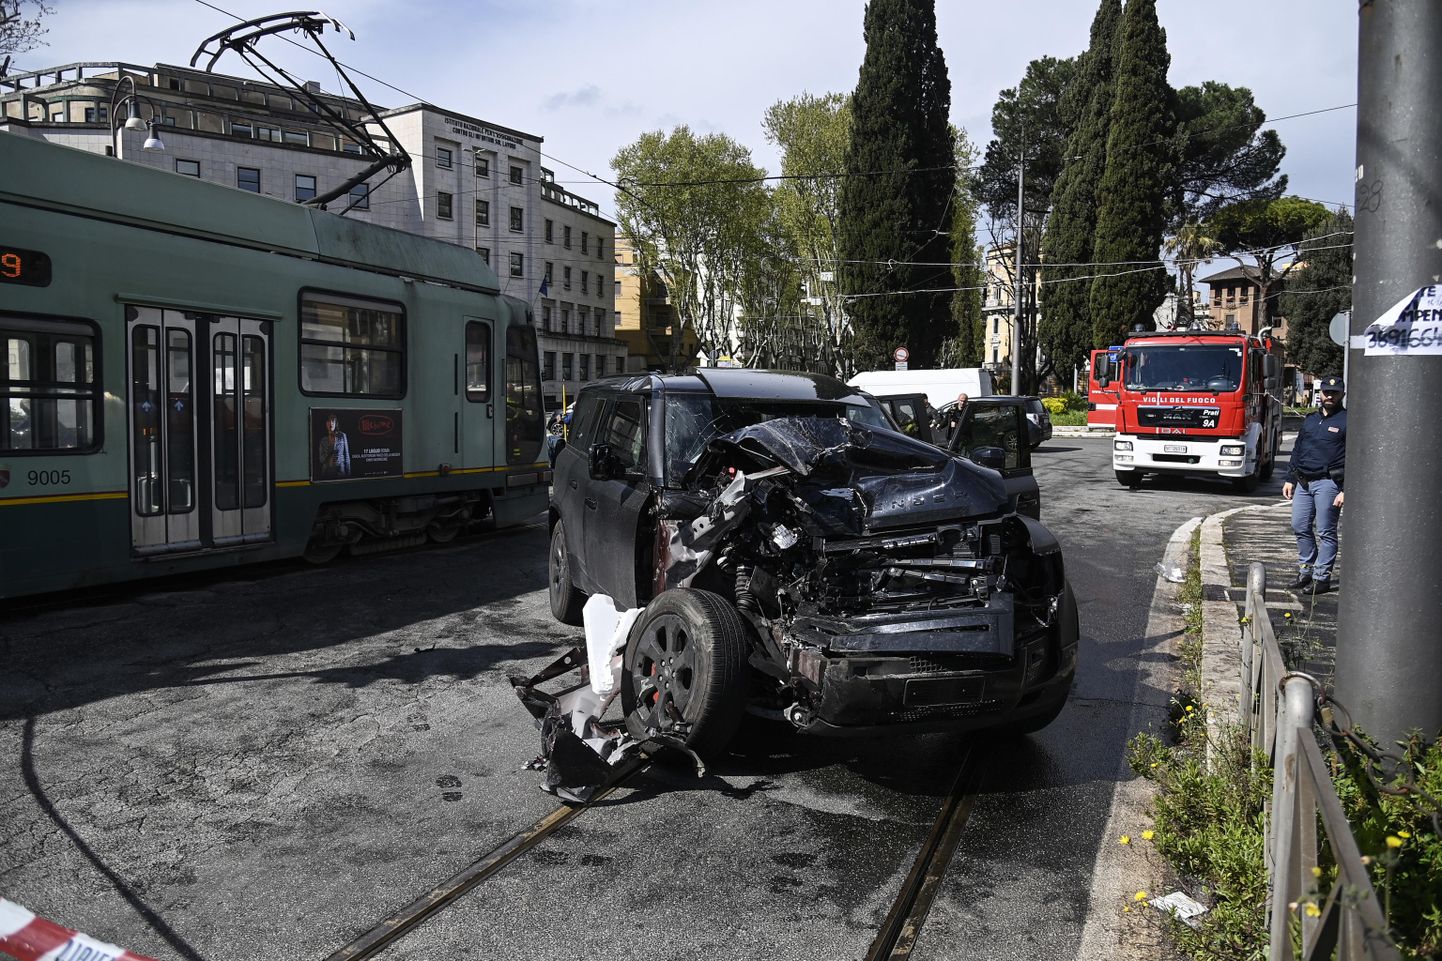 Автомобиль Чиро Иммобиле, Land Rover Defender, сильно пострадал.